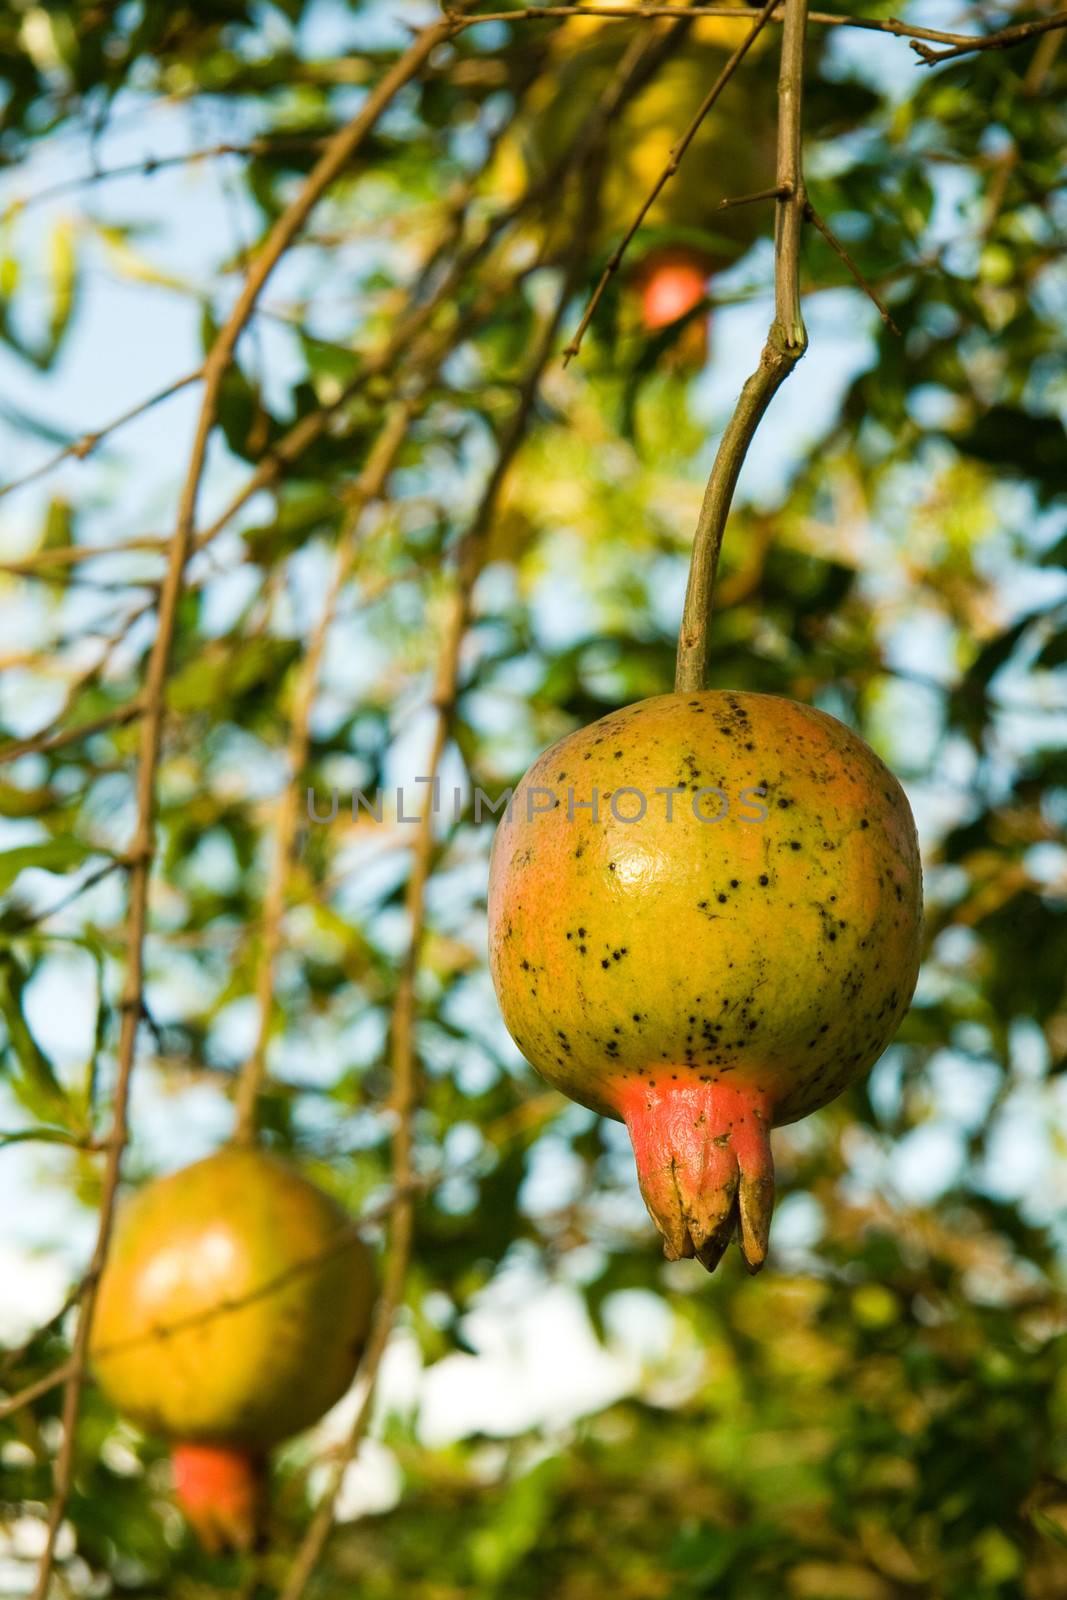 Pomegranate on a tree by CelsoDiniz